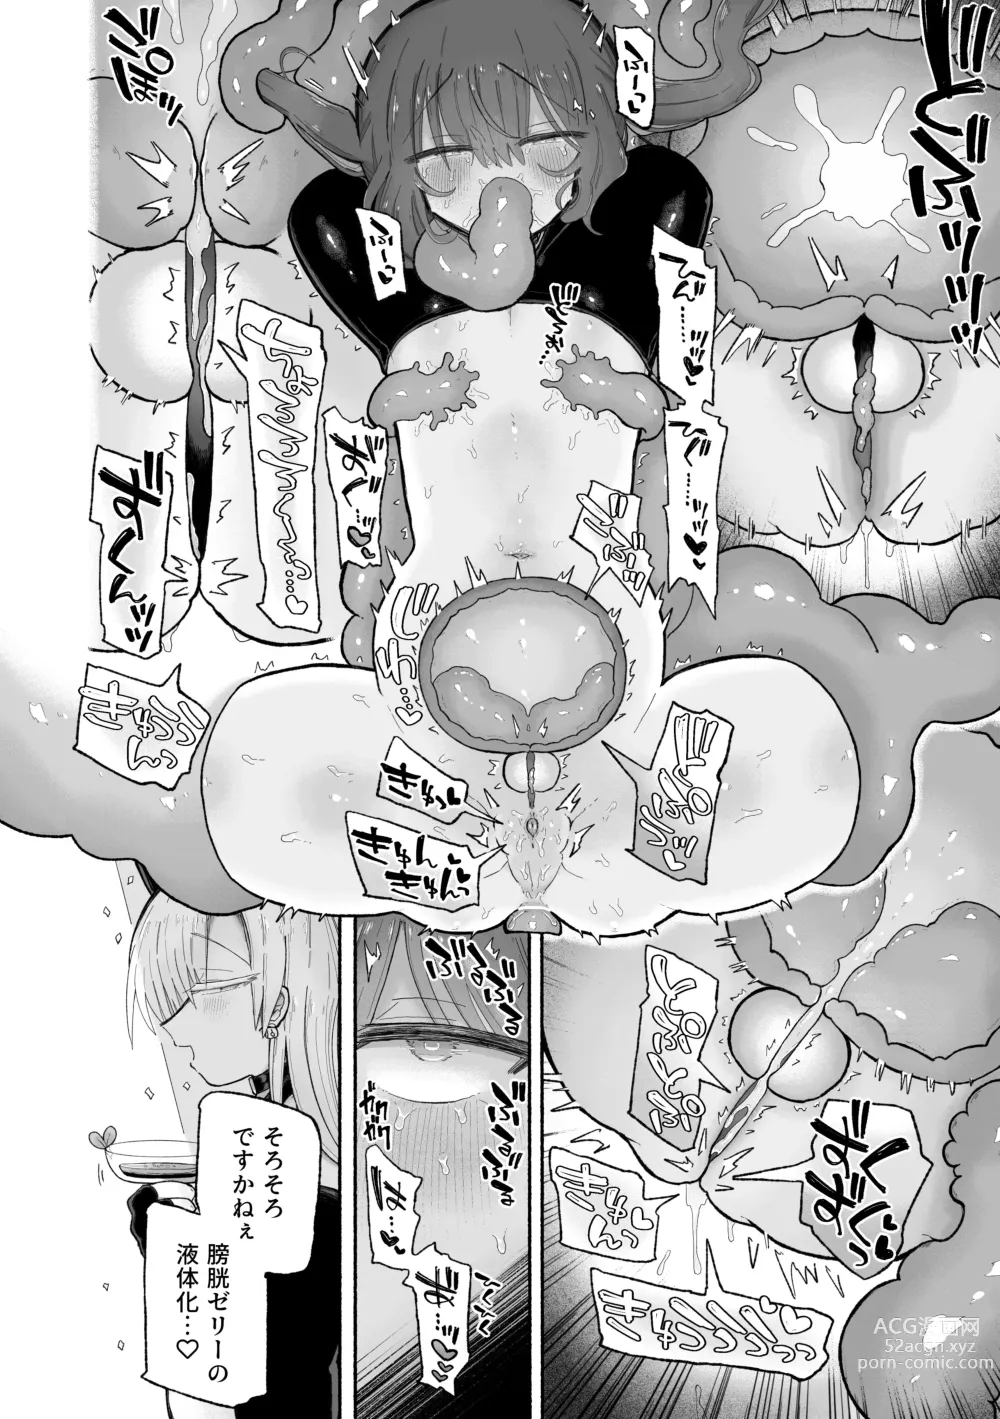 Page 44 of doujinshi Do hamari chui no kyosei danjon! 〜Mugen shasei no kairaku jigoku e yokoso〜